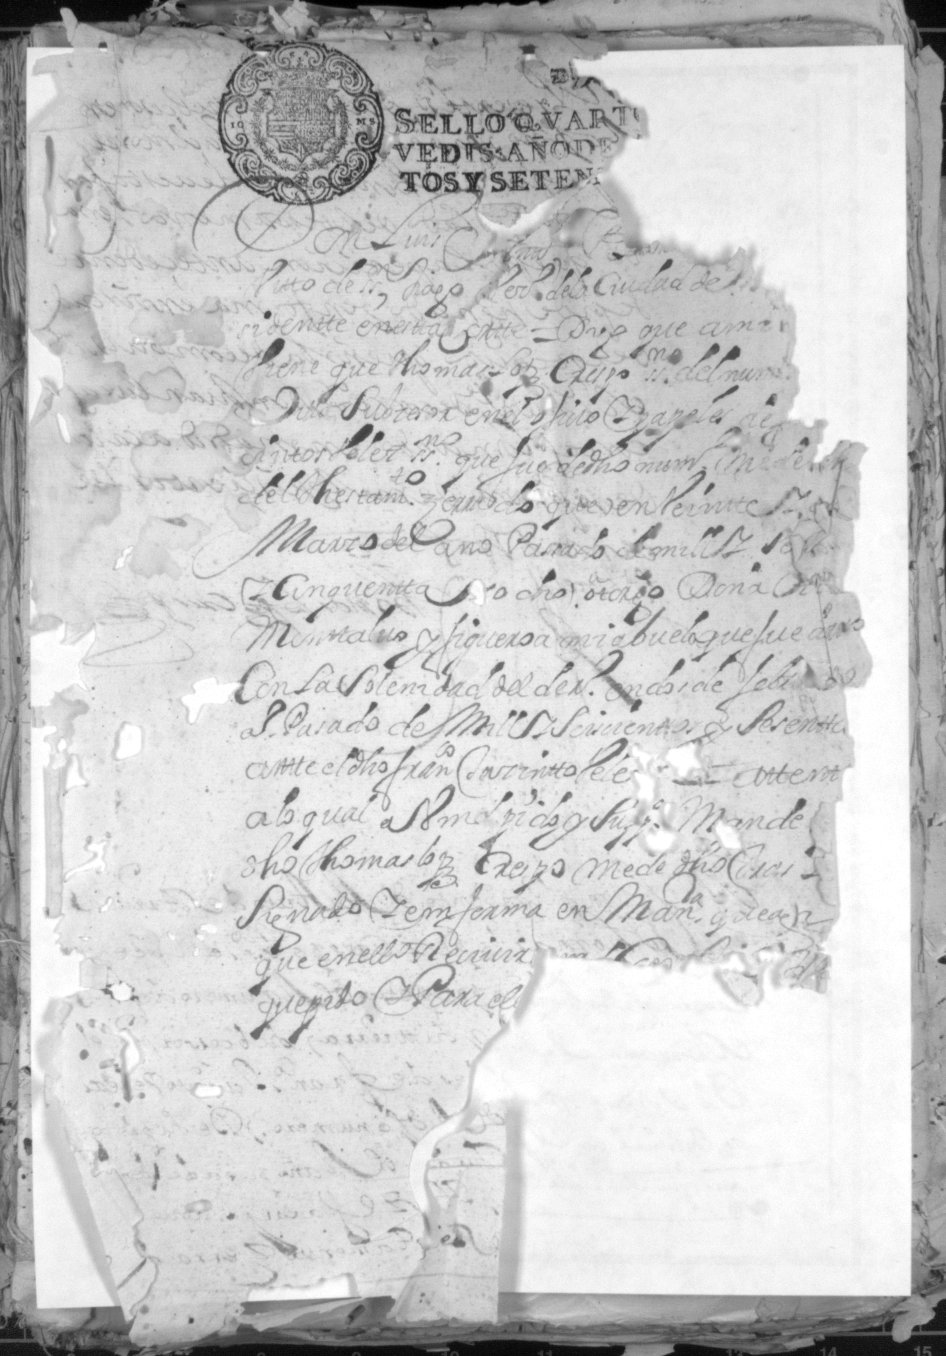 Registro de José Garín García, Murcia de 1679.